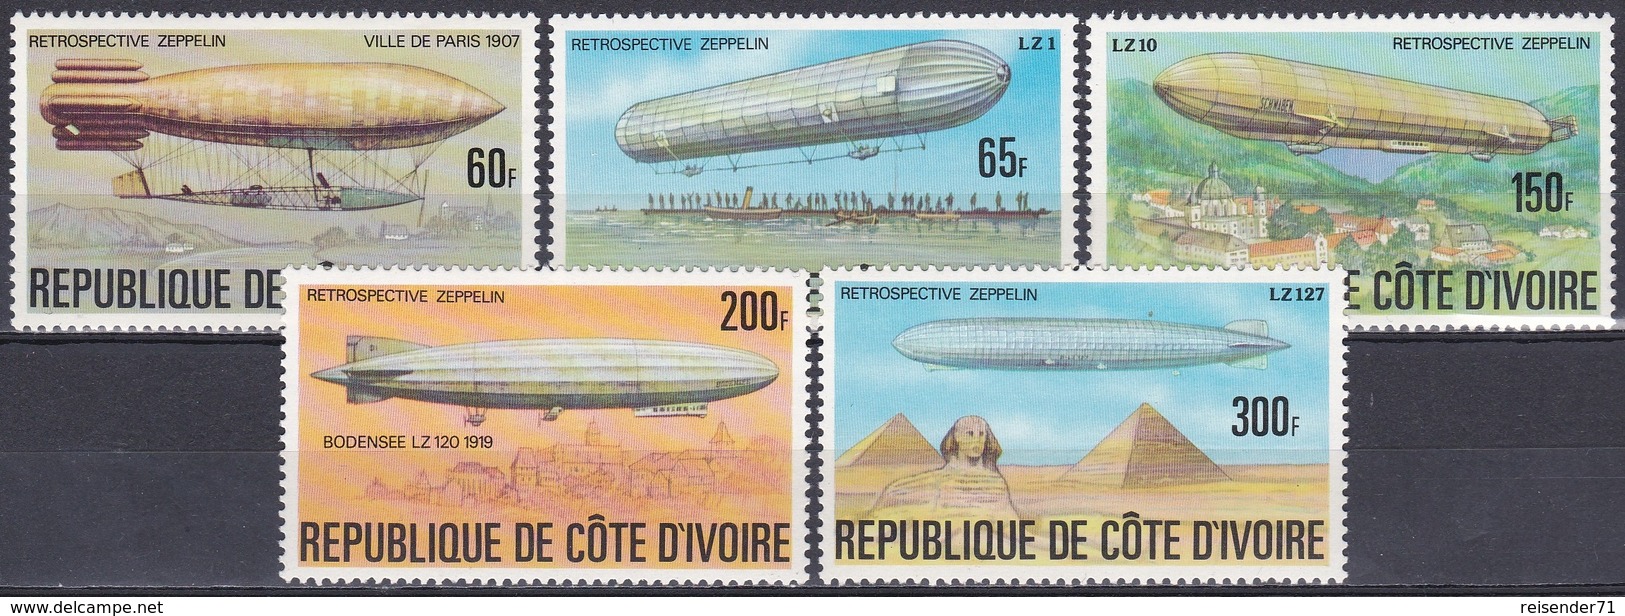 Elfenbeinküste Ivory Coast Cote D'Ivoire 1977 Transport Luftfahrt Aviation Luftschiffe Zeppelin Airships, Mi. 517-1 ** - Côte D'Ivoire (1960-...)